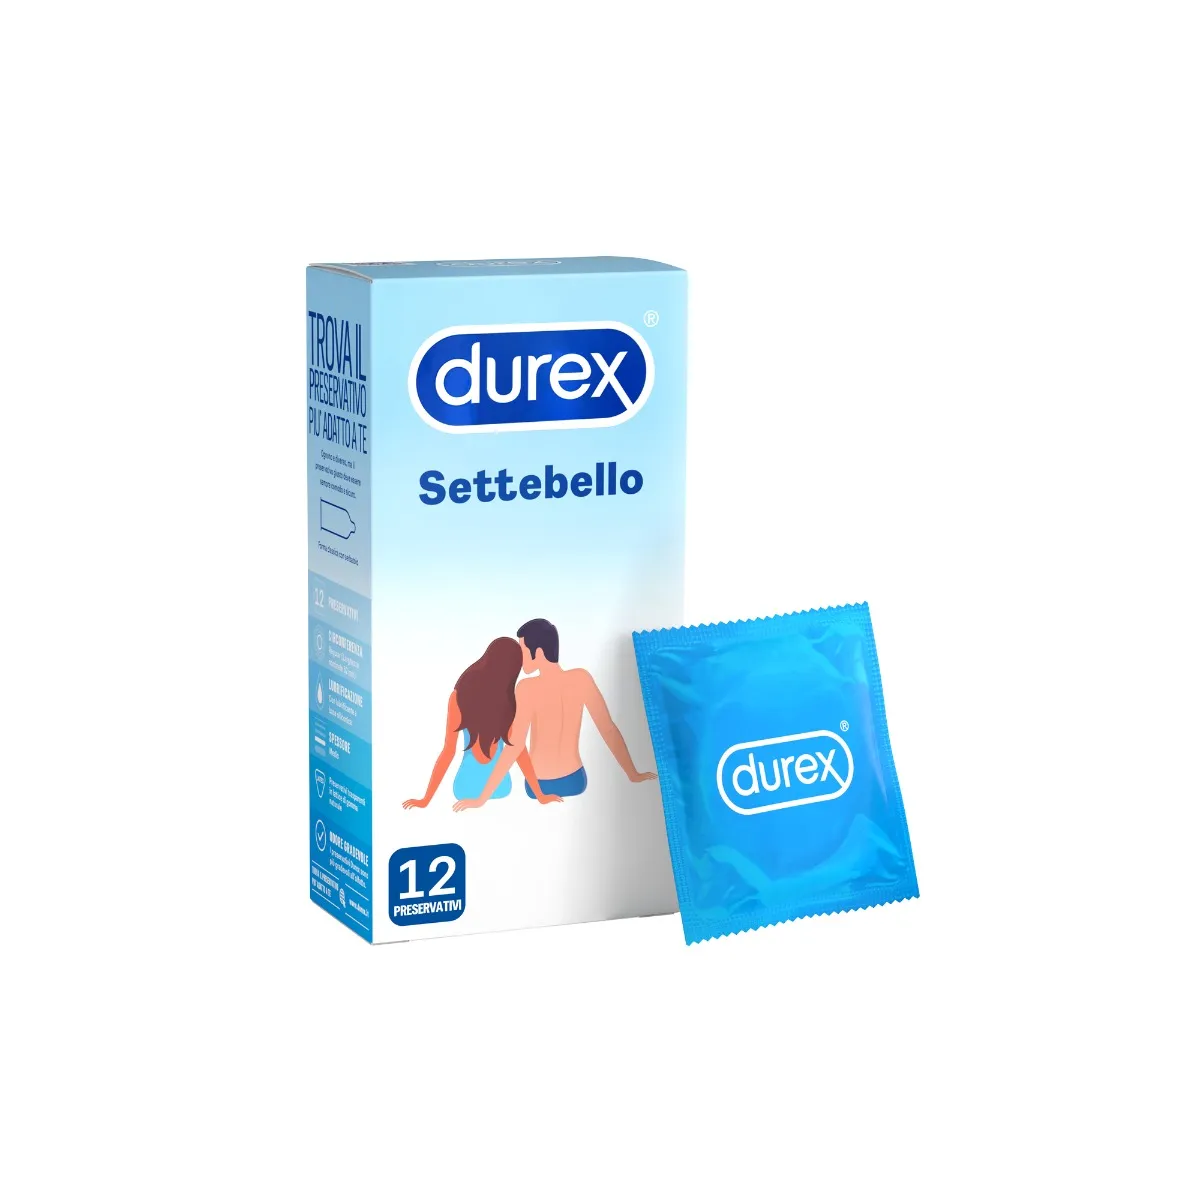 Durex Settebello Classico Preservativi 12 Pezzi Trasparenti e Lubrificati